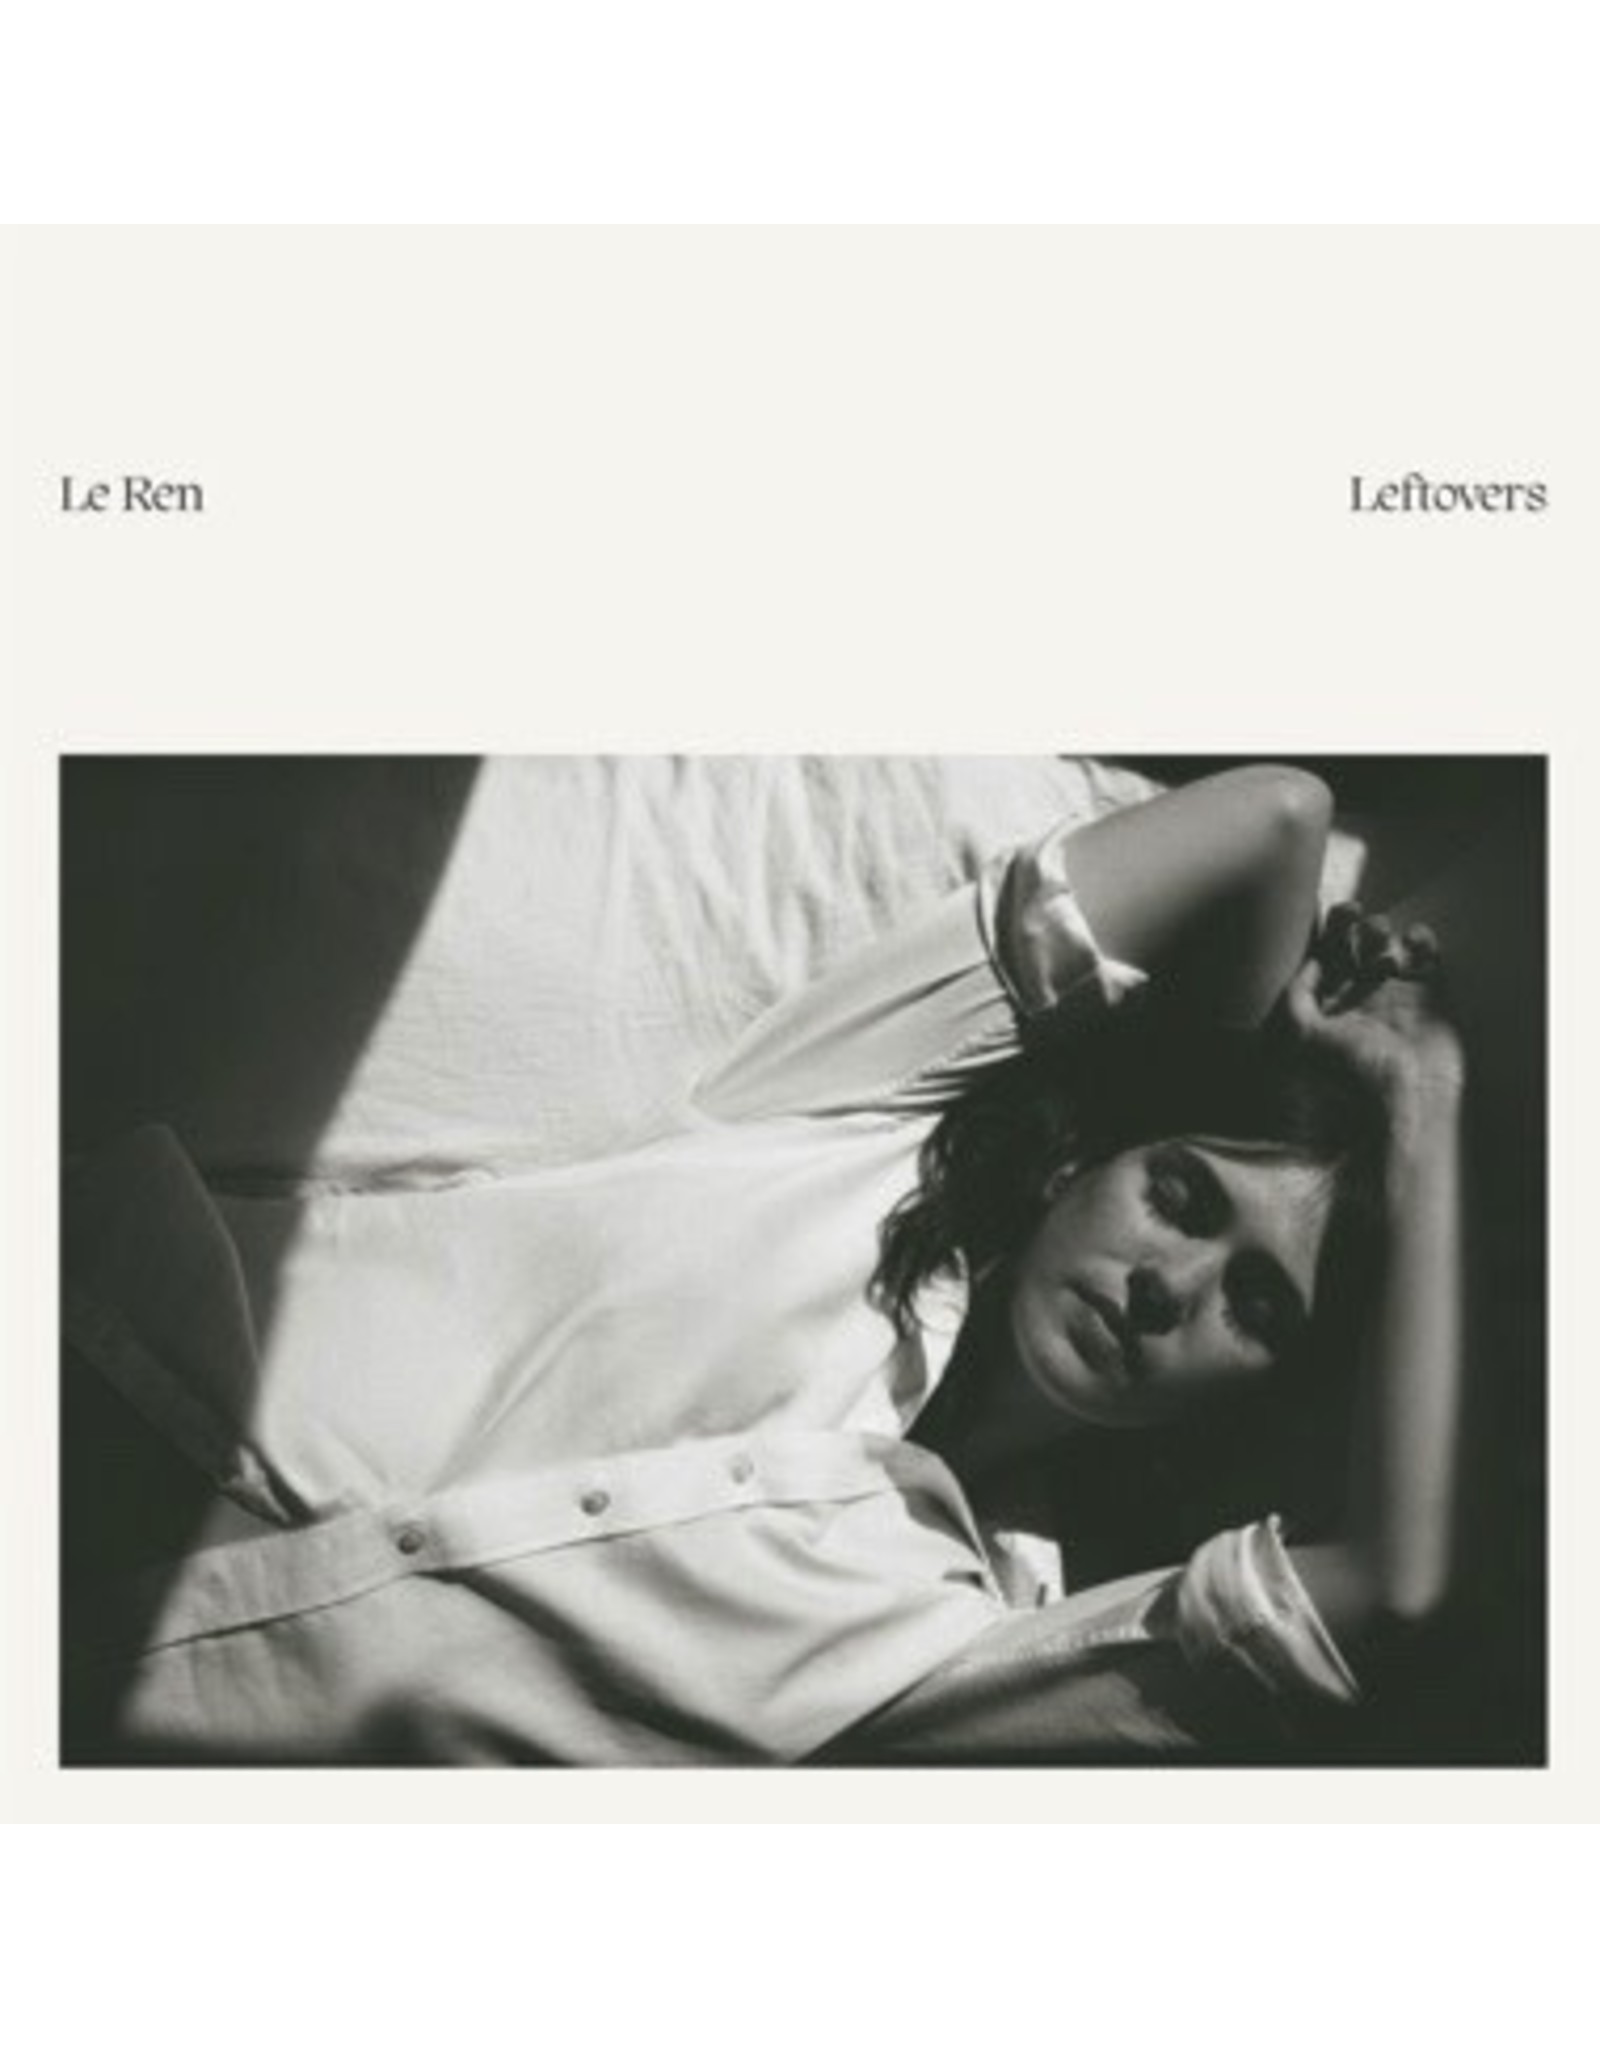 New Vinyl Le Ren - Leftovers (Opaque Yellow) LP